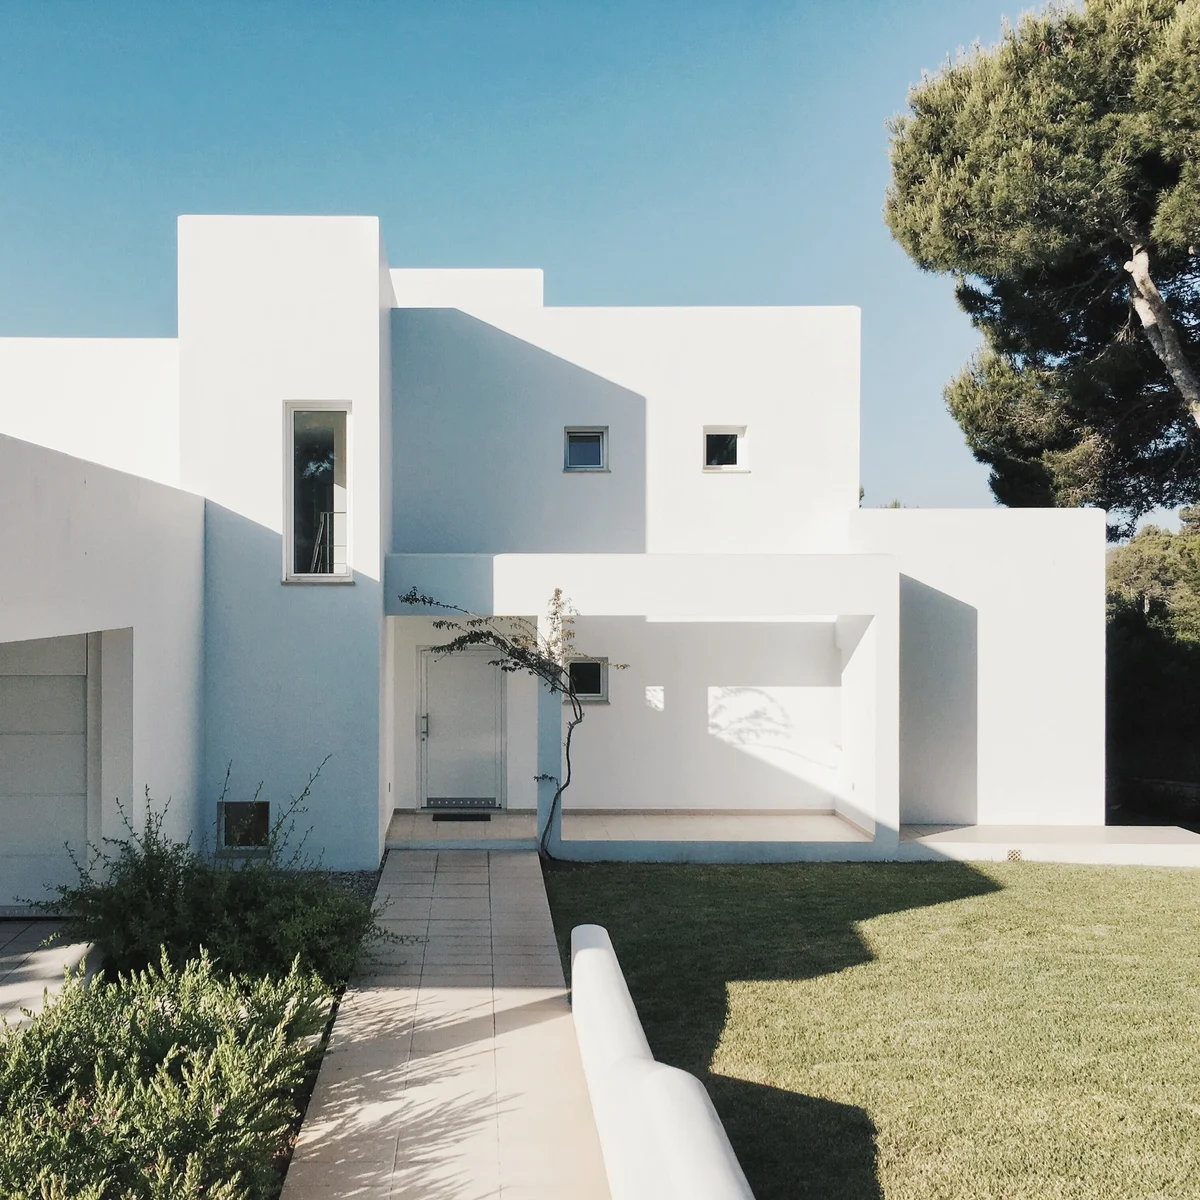 Modernes, kubistisches weißes Haus mit geometrischen Formen, umgeben von einem gepflegten Rasen, einem schlanken jungen Baum auf der Vorderseite und einem großen Kiefernbaum auf der rechten Seite unter einem klaren blauen Himmel.